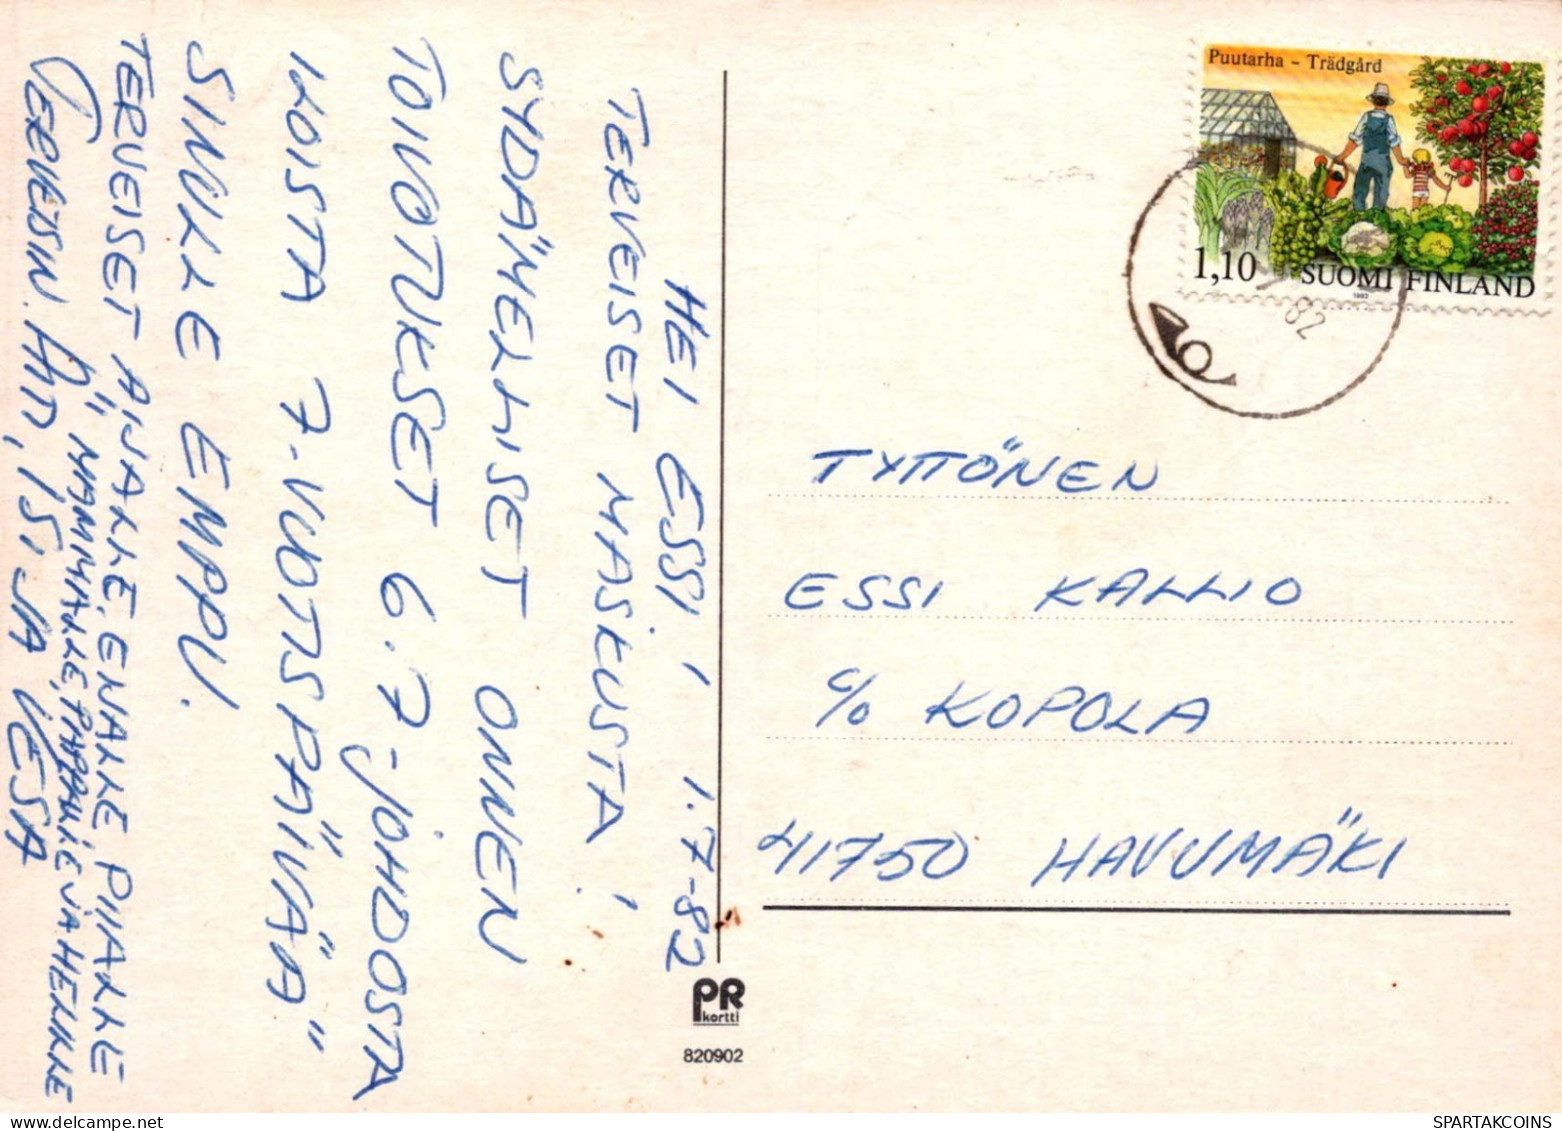 KINDER KINDER Szene S Landschafts Vintage Postal CPSM #PBT673.DE - Escenas & Paisajes